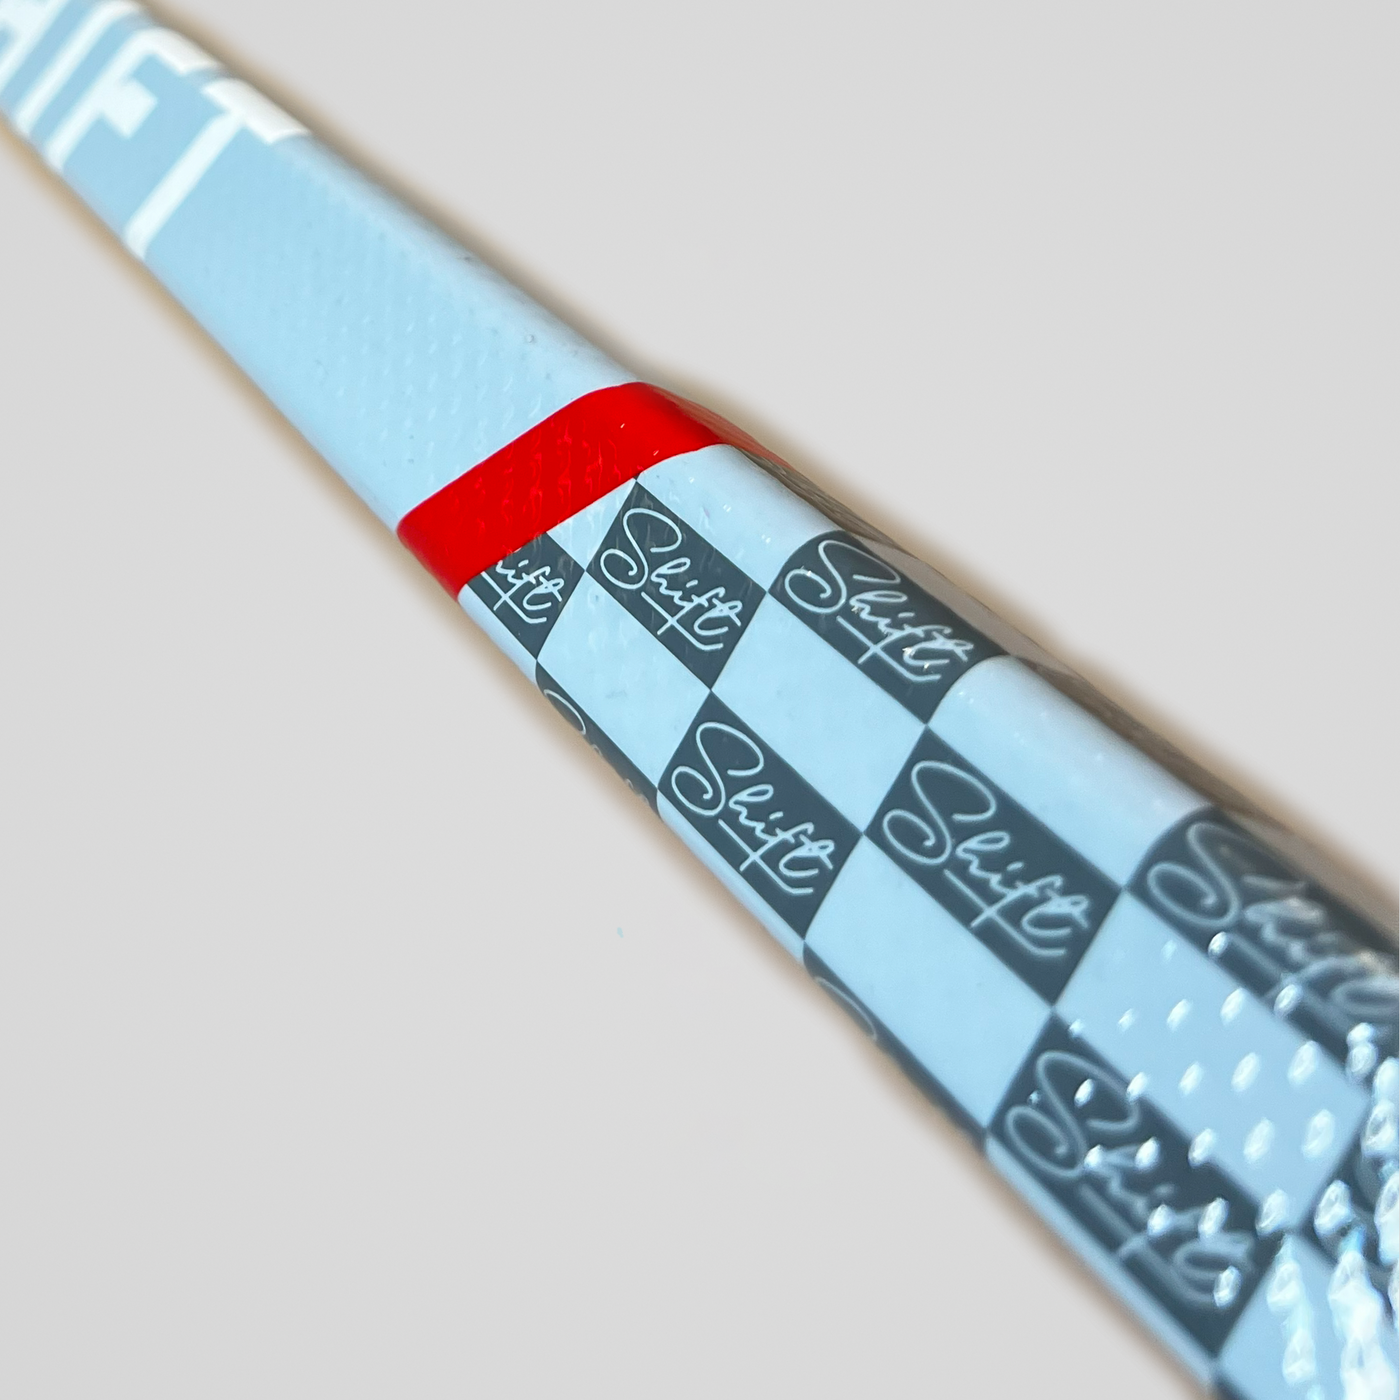 MONOGRAM - Senior Hockey Stick - Standard 65"